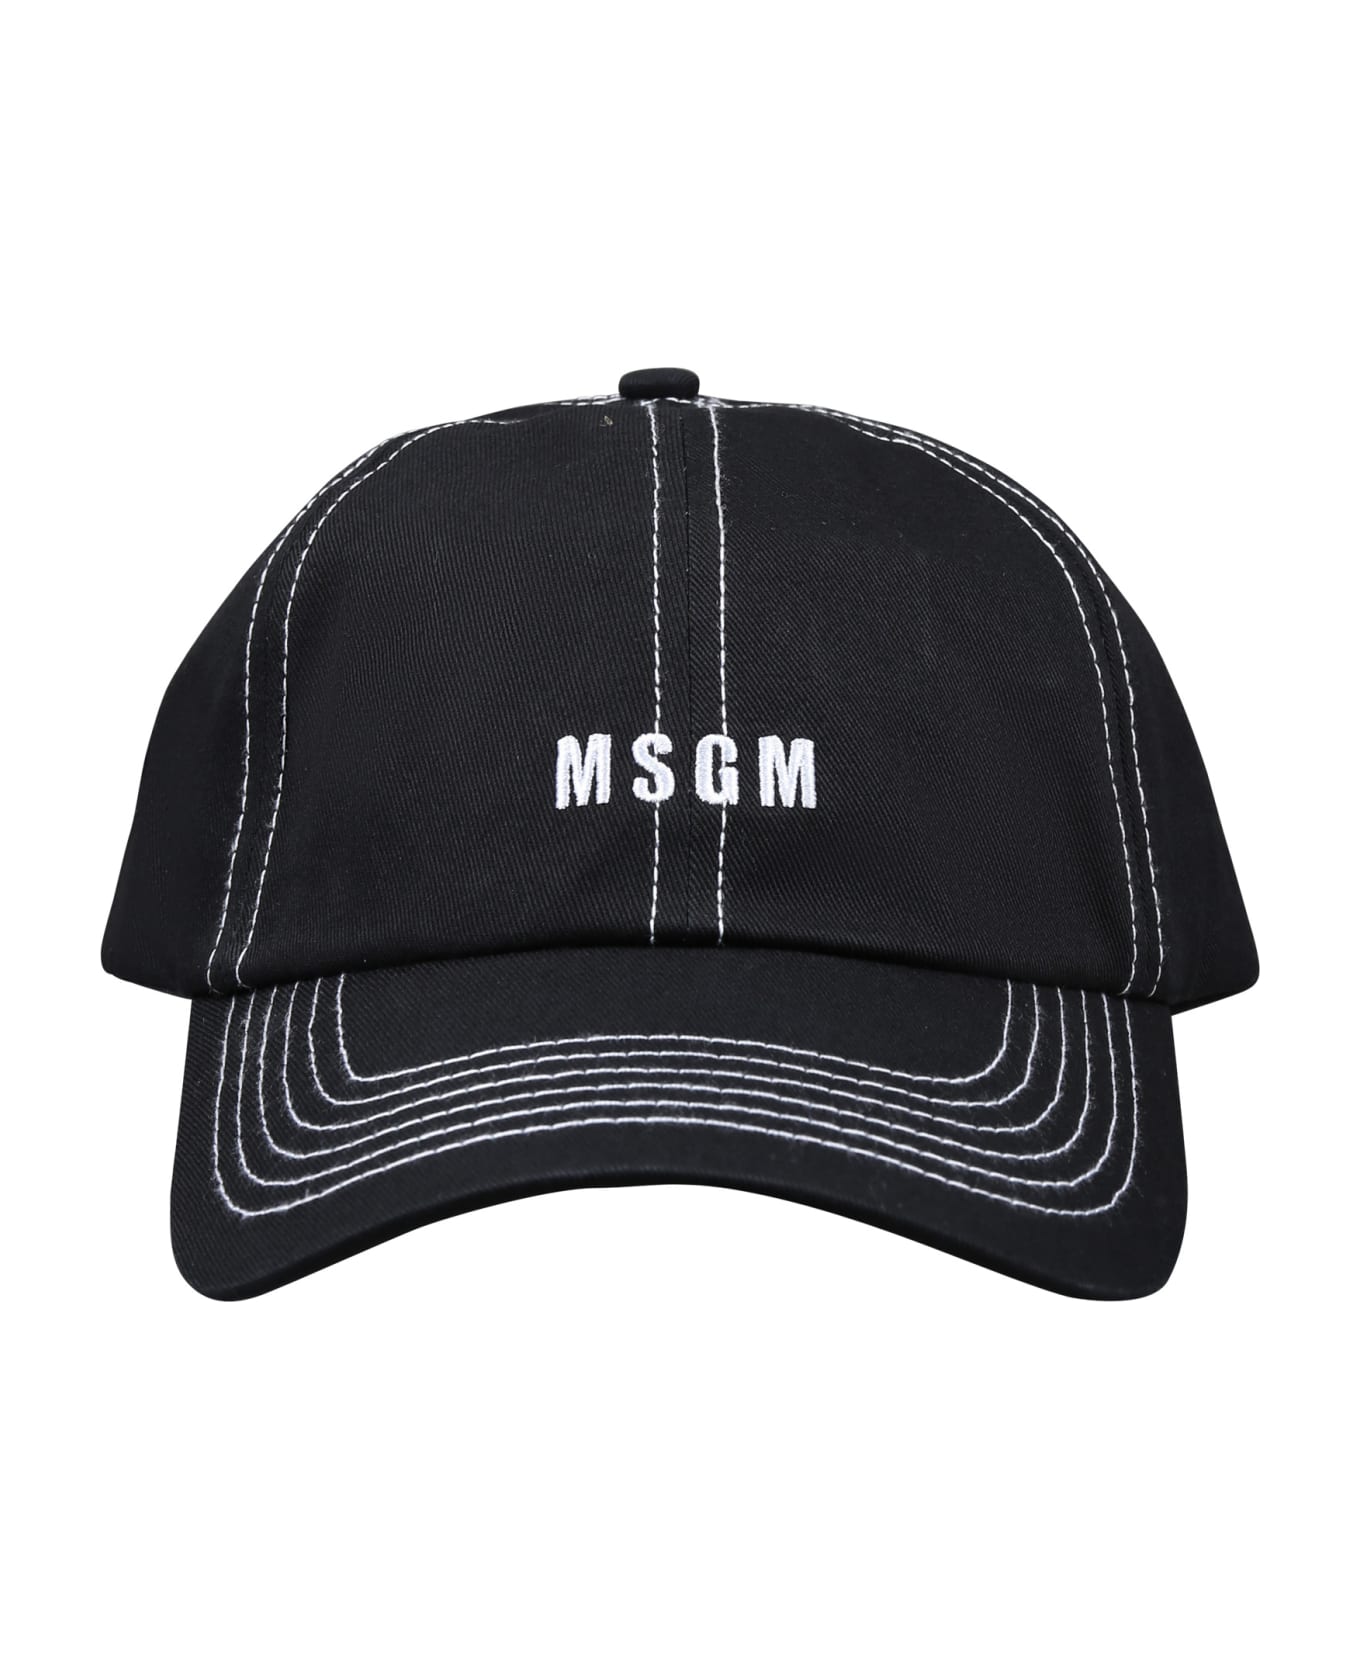 MSGM Black Hat With Visor For Boy - Black アクセサリー＆ギフト